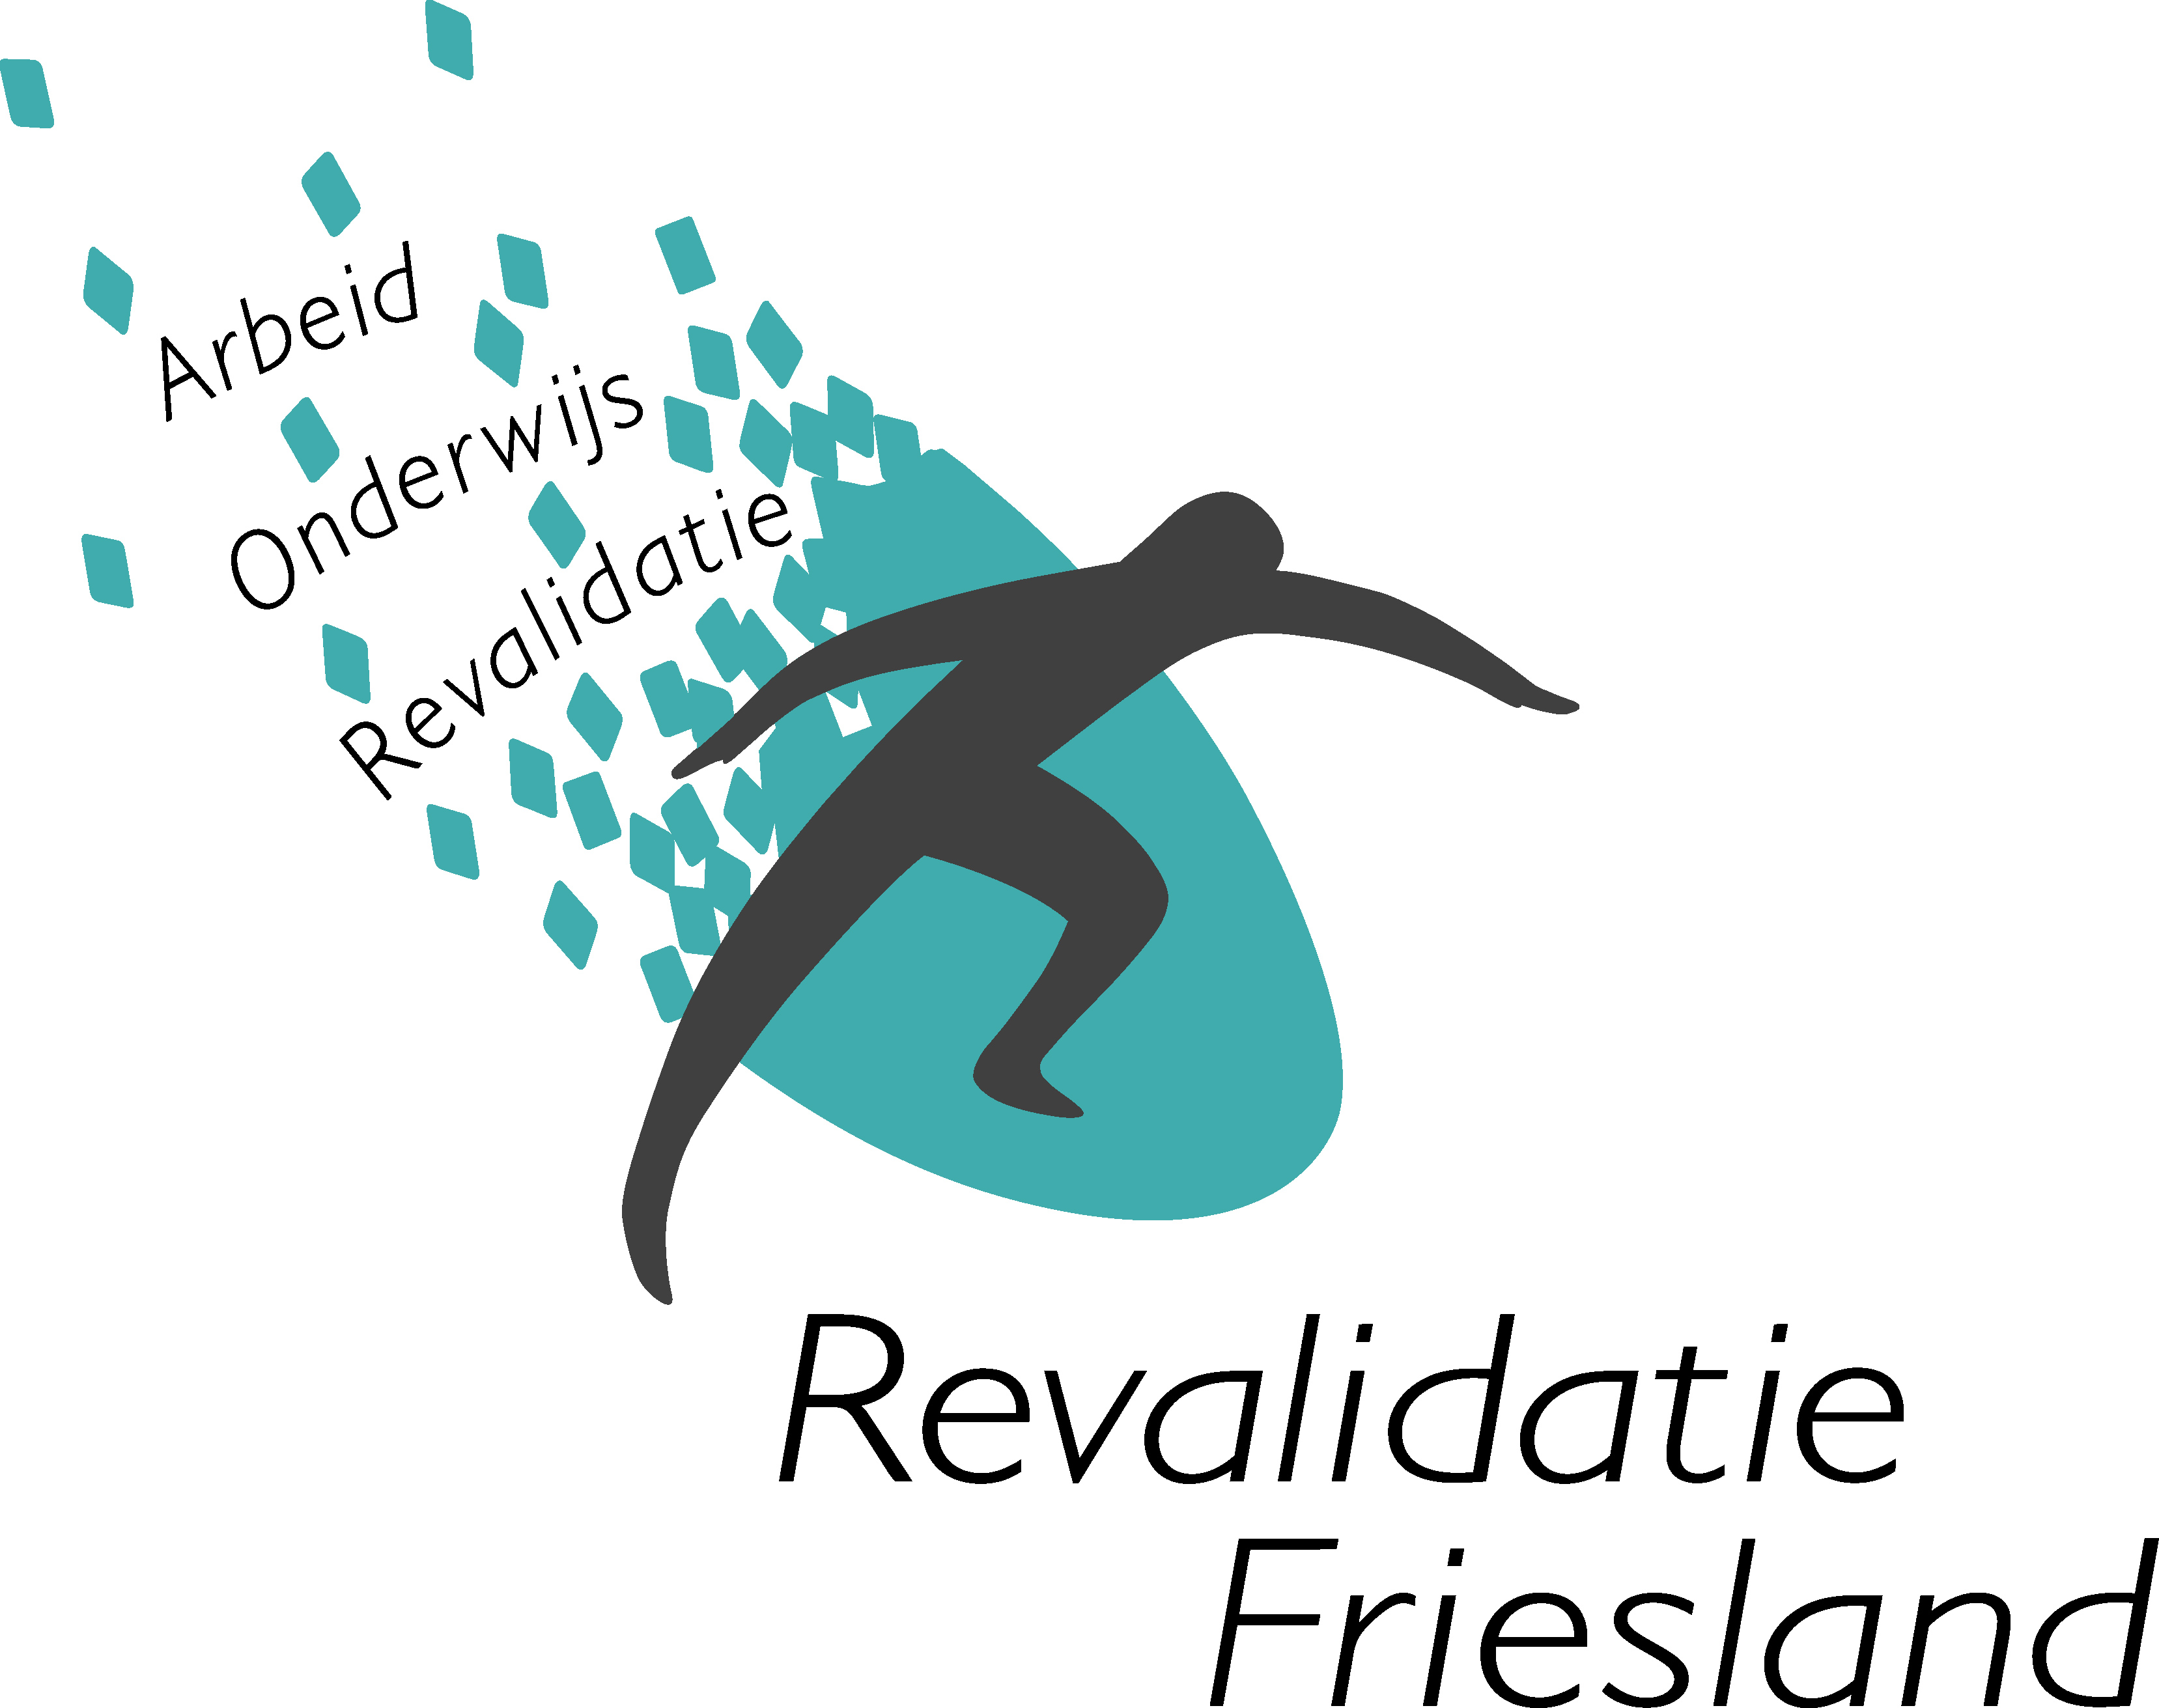 Revalidatie Friesland locatie Leeuwarden